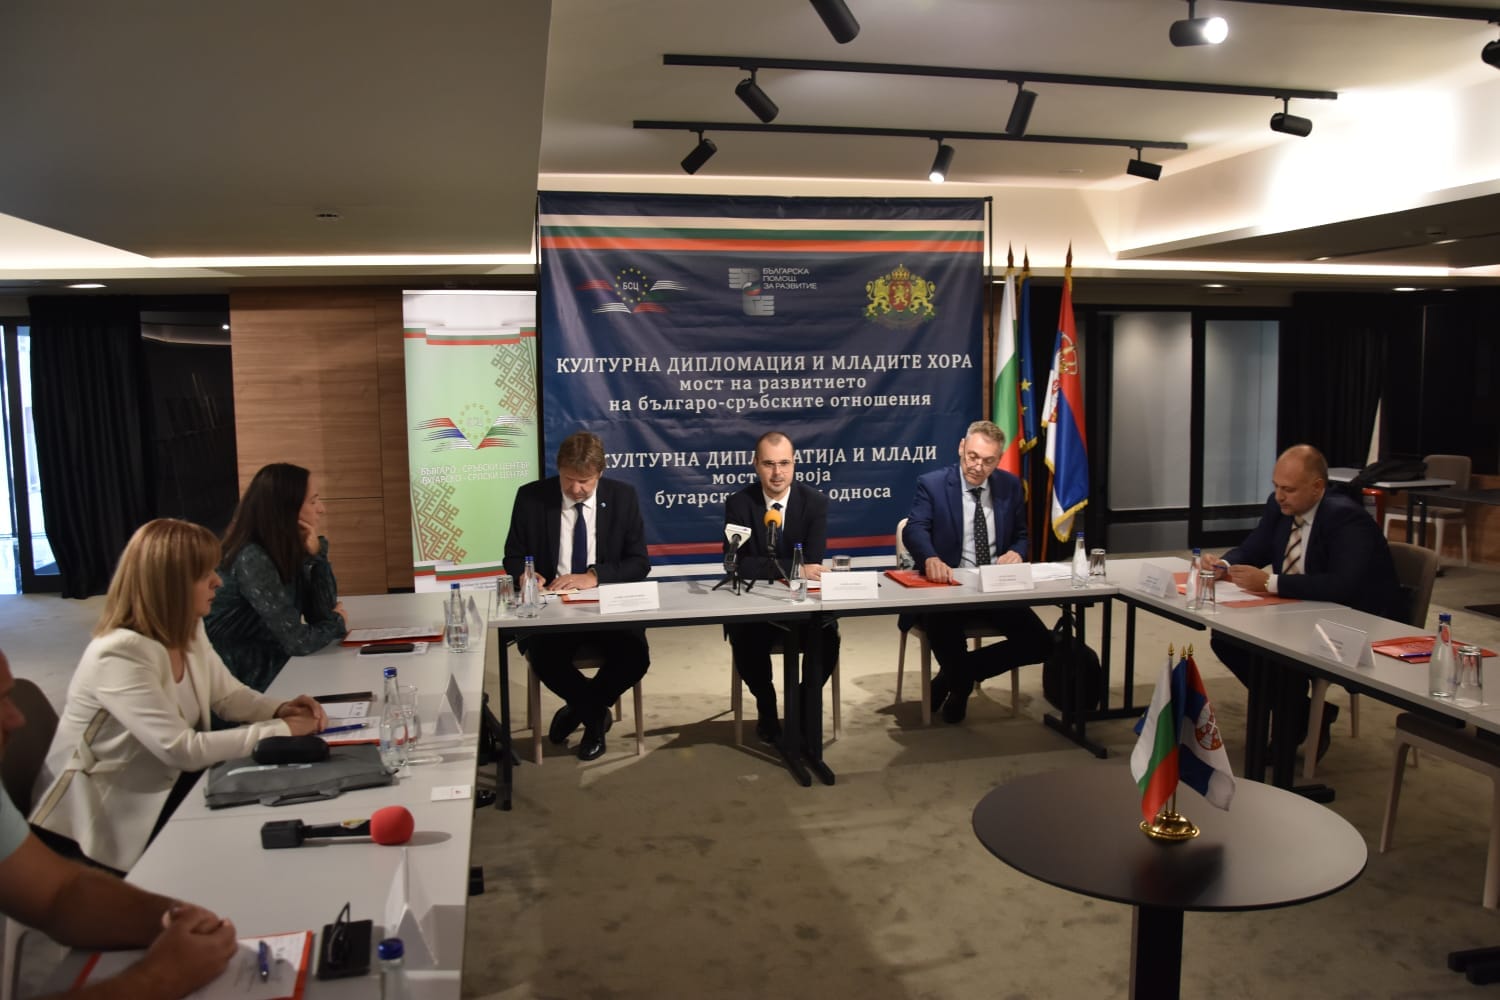 Кръгла маса на тема "Културната дипломация и младите - мост за развитие на българо-сръбските отношения" във Враня